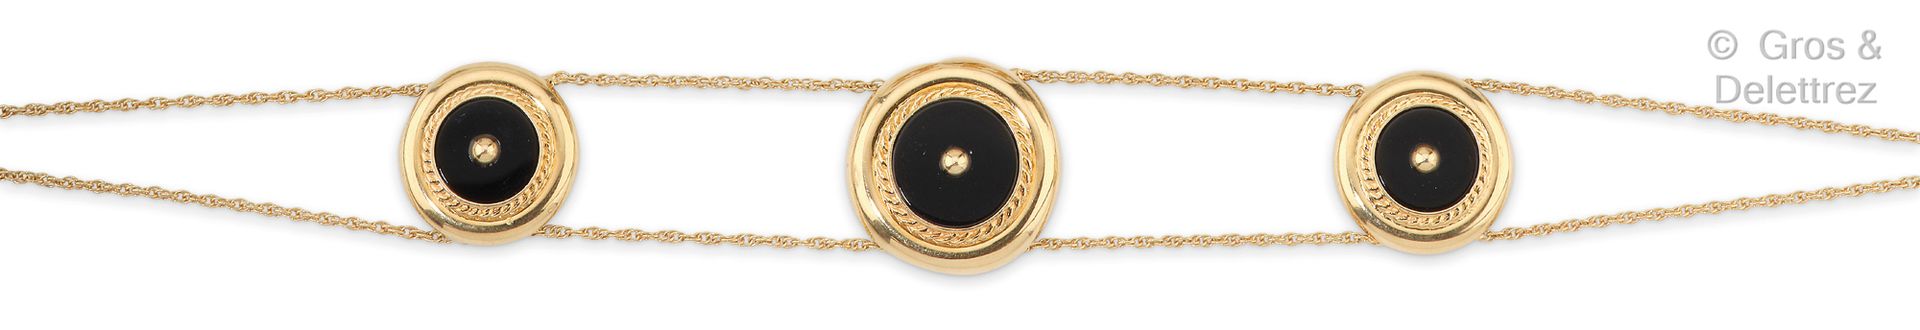 Null 黄金手镯，由两条链子组成，链子上的圆形图案在扭曲的框架中镶嵌着黑玛瑙板，顶部有一颗金珍珠。长度：18.5厘米。毛重：6.5克